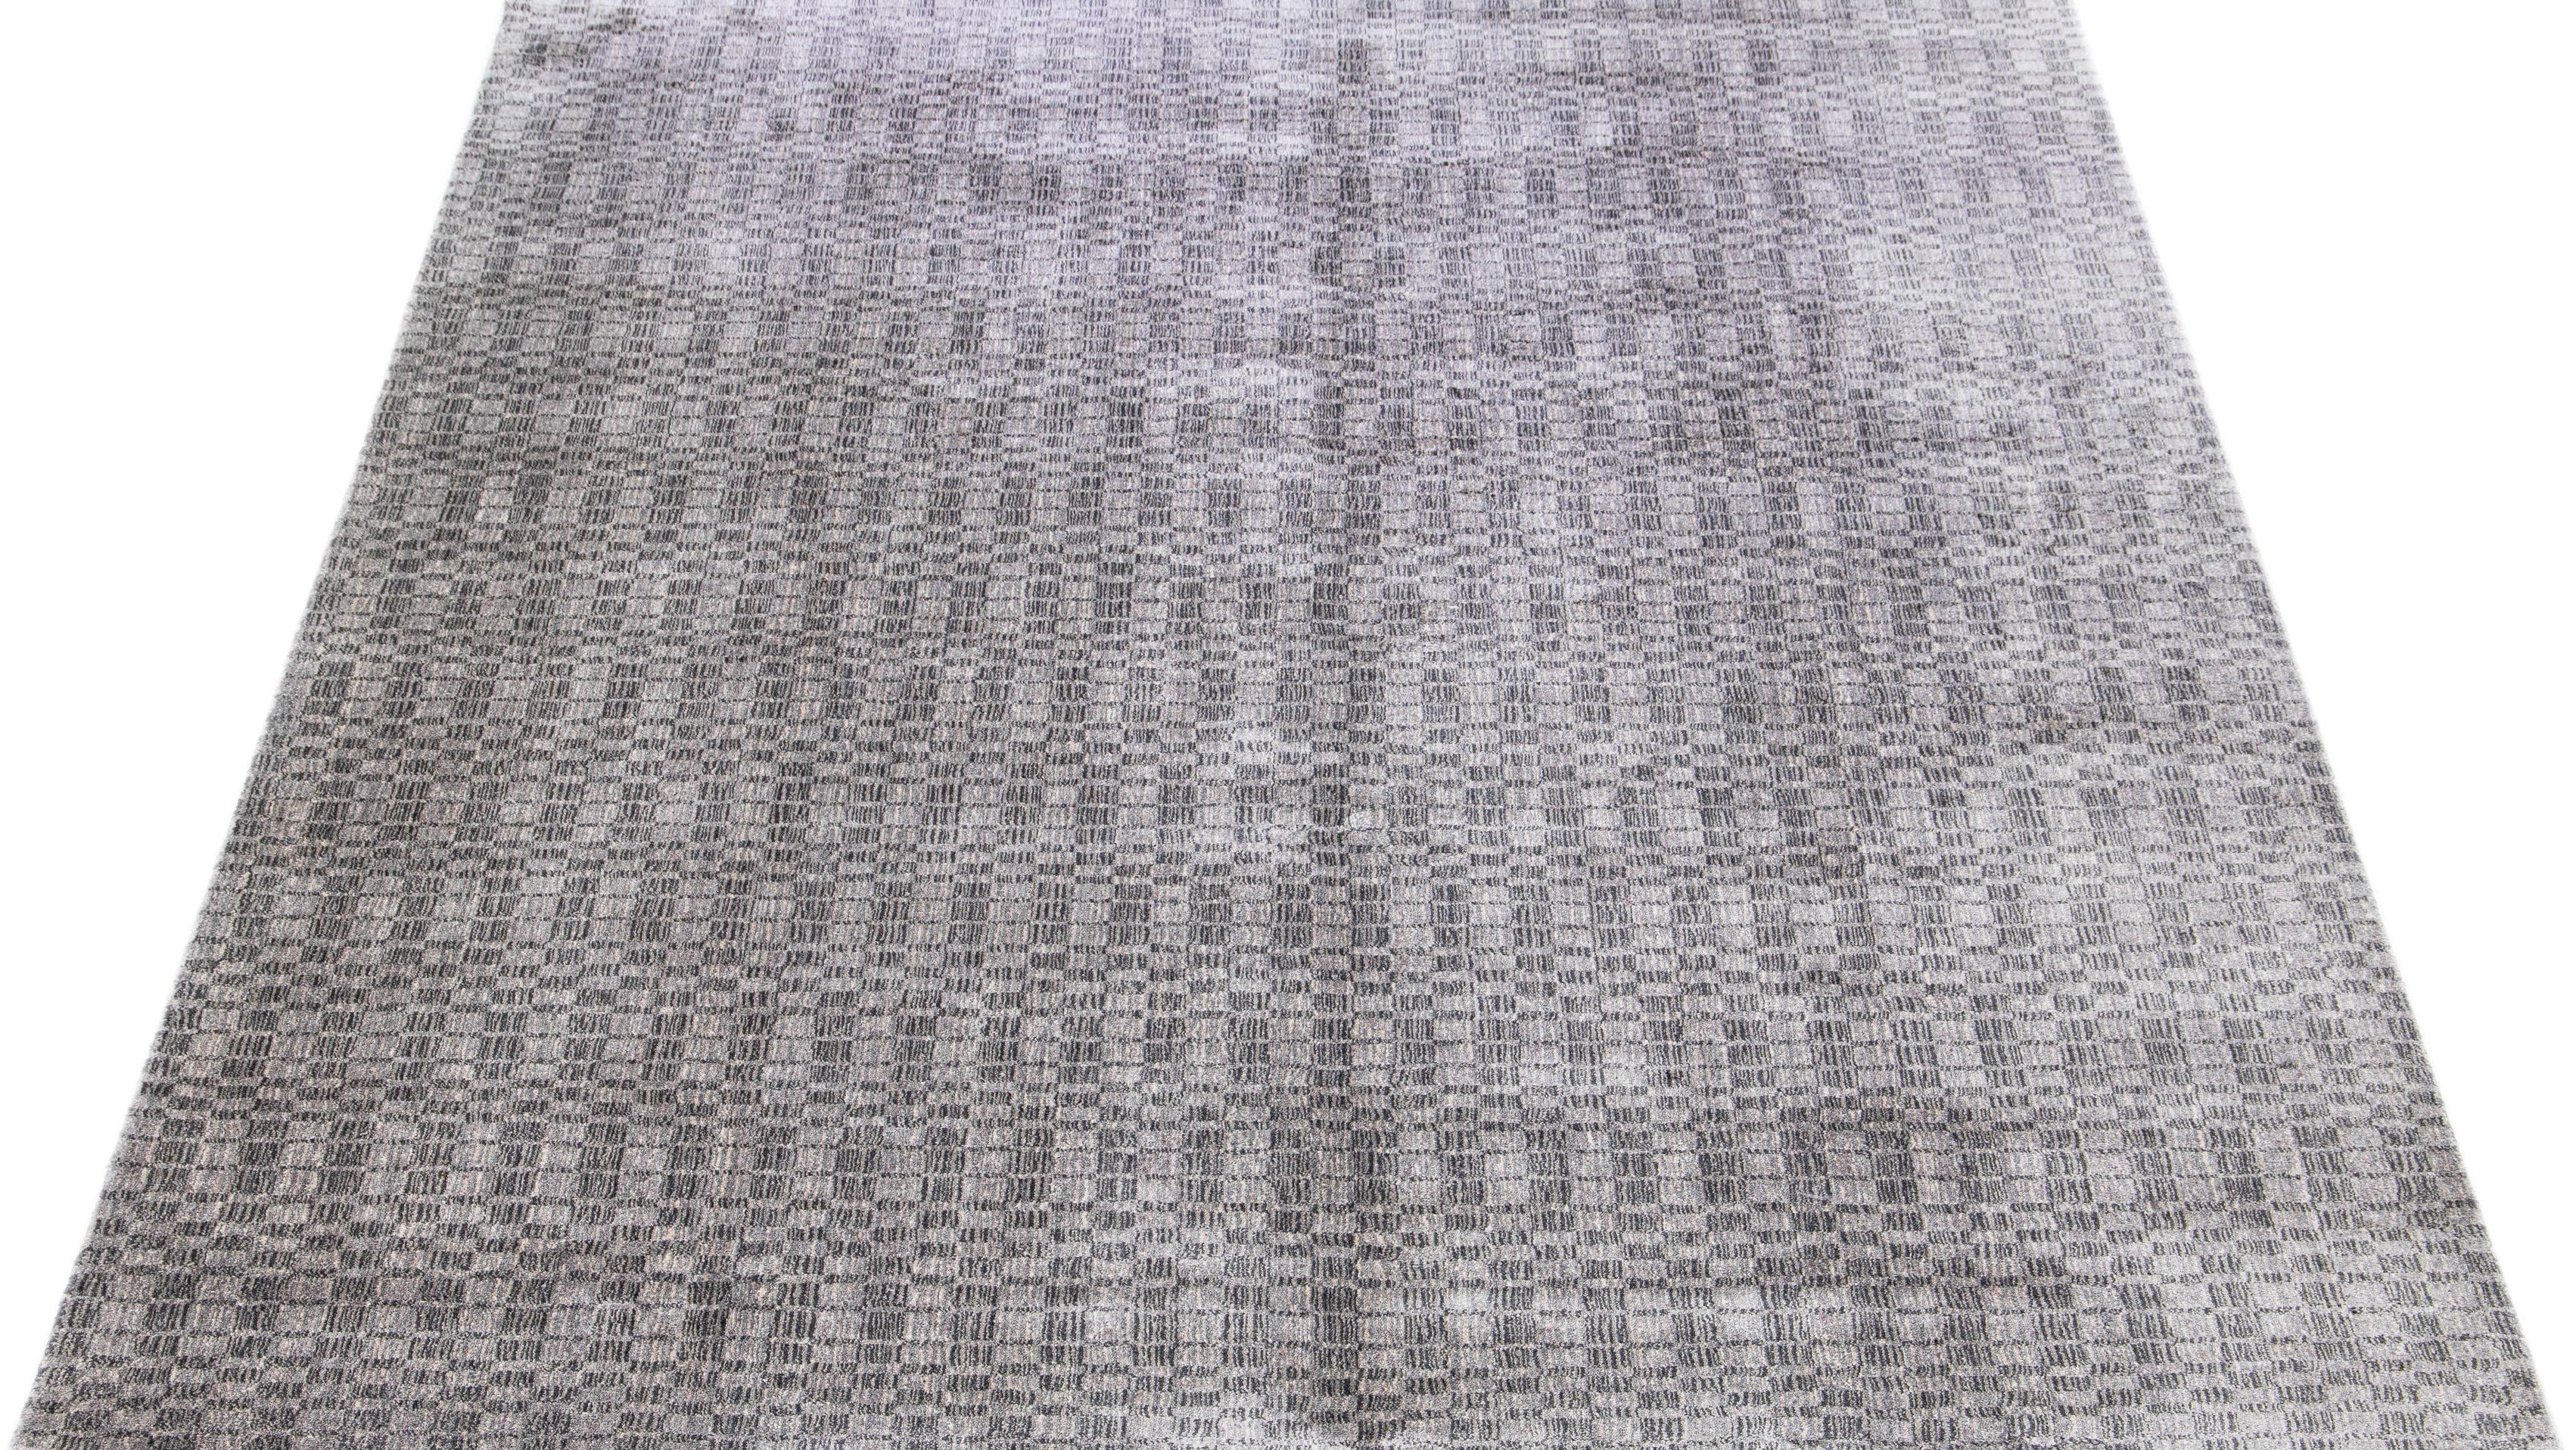 Dieser exquisite zeitgenössische Teppich, der in sorgfältiger Handarbeit aus einer Mischung aus Seide und Wolle gefertigt wurde, zeigt ein atemberaubendes graues Grundmuster, das durch ein verführerisches geometrisches Design in Silberschattierungen